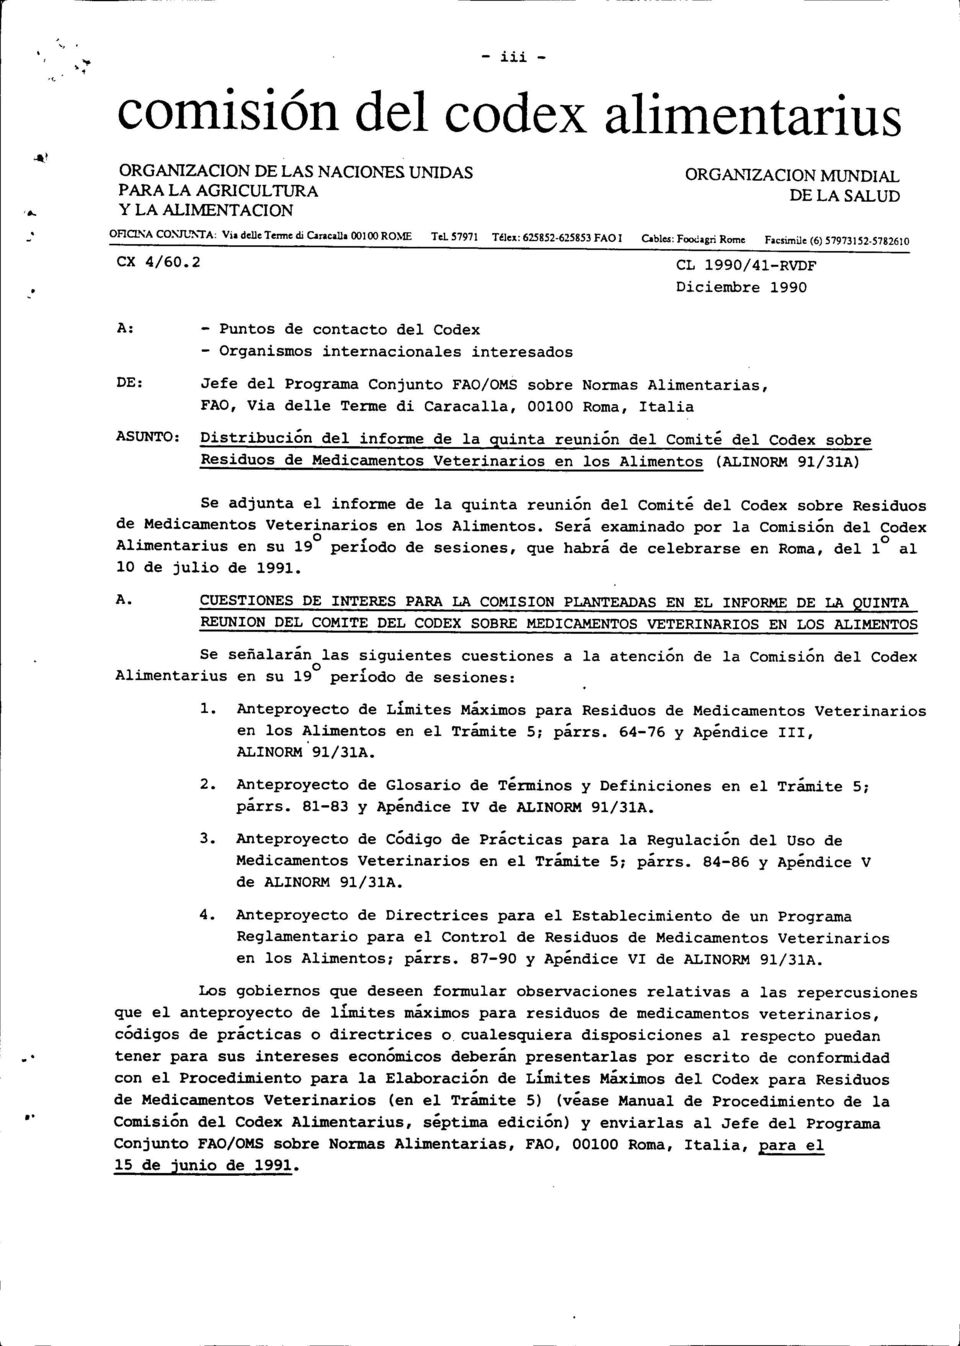 2 CL 1990/41 -RVDF Diciembre 1990 A: - Puntos de contacto del Codex - Organismos internacionales interesados DE: Jefe del Programa Conjunto FAO/OMS sobre Normas Alimentarias, FAO, Via delle Terme di